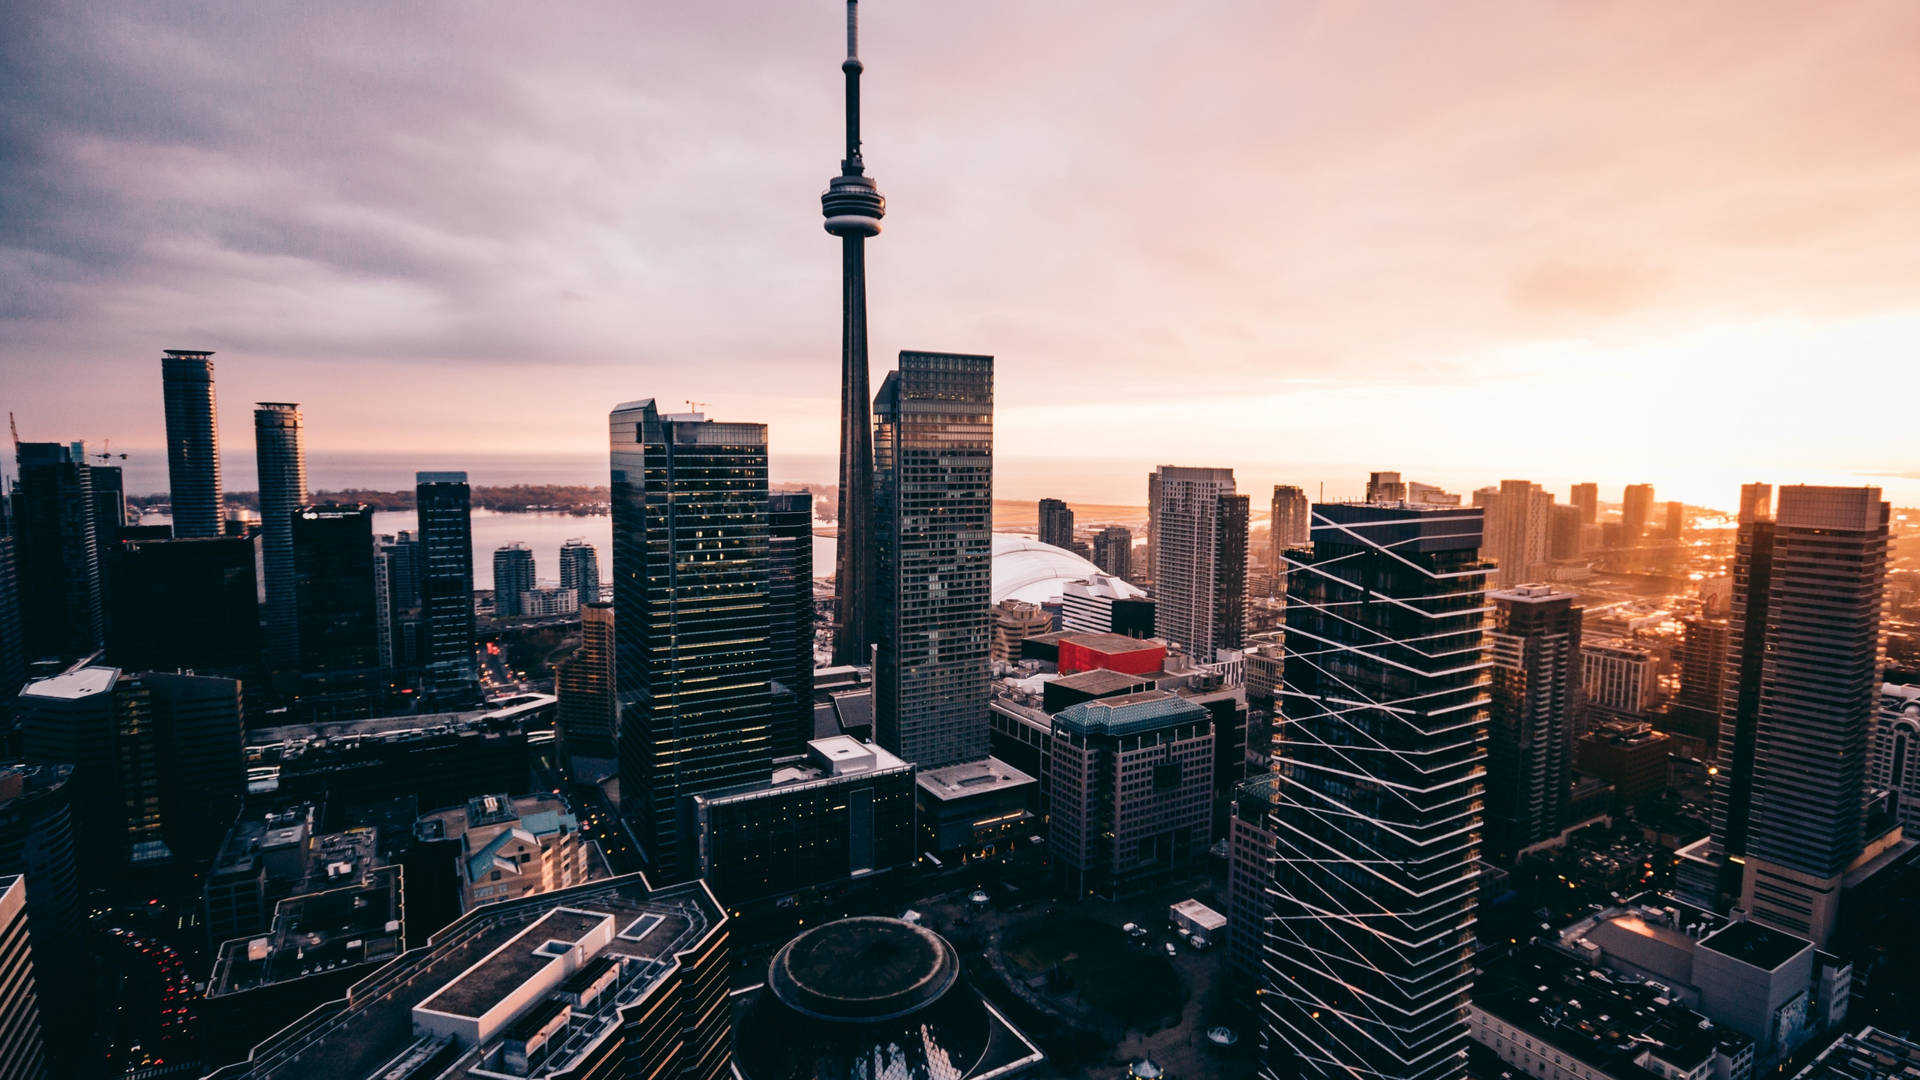 Torontogebäude Mit Sonnenuntergangsansicht Wallpaper